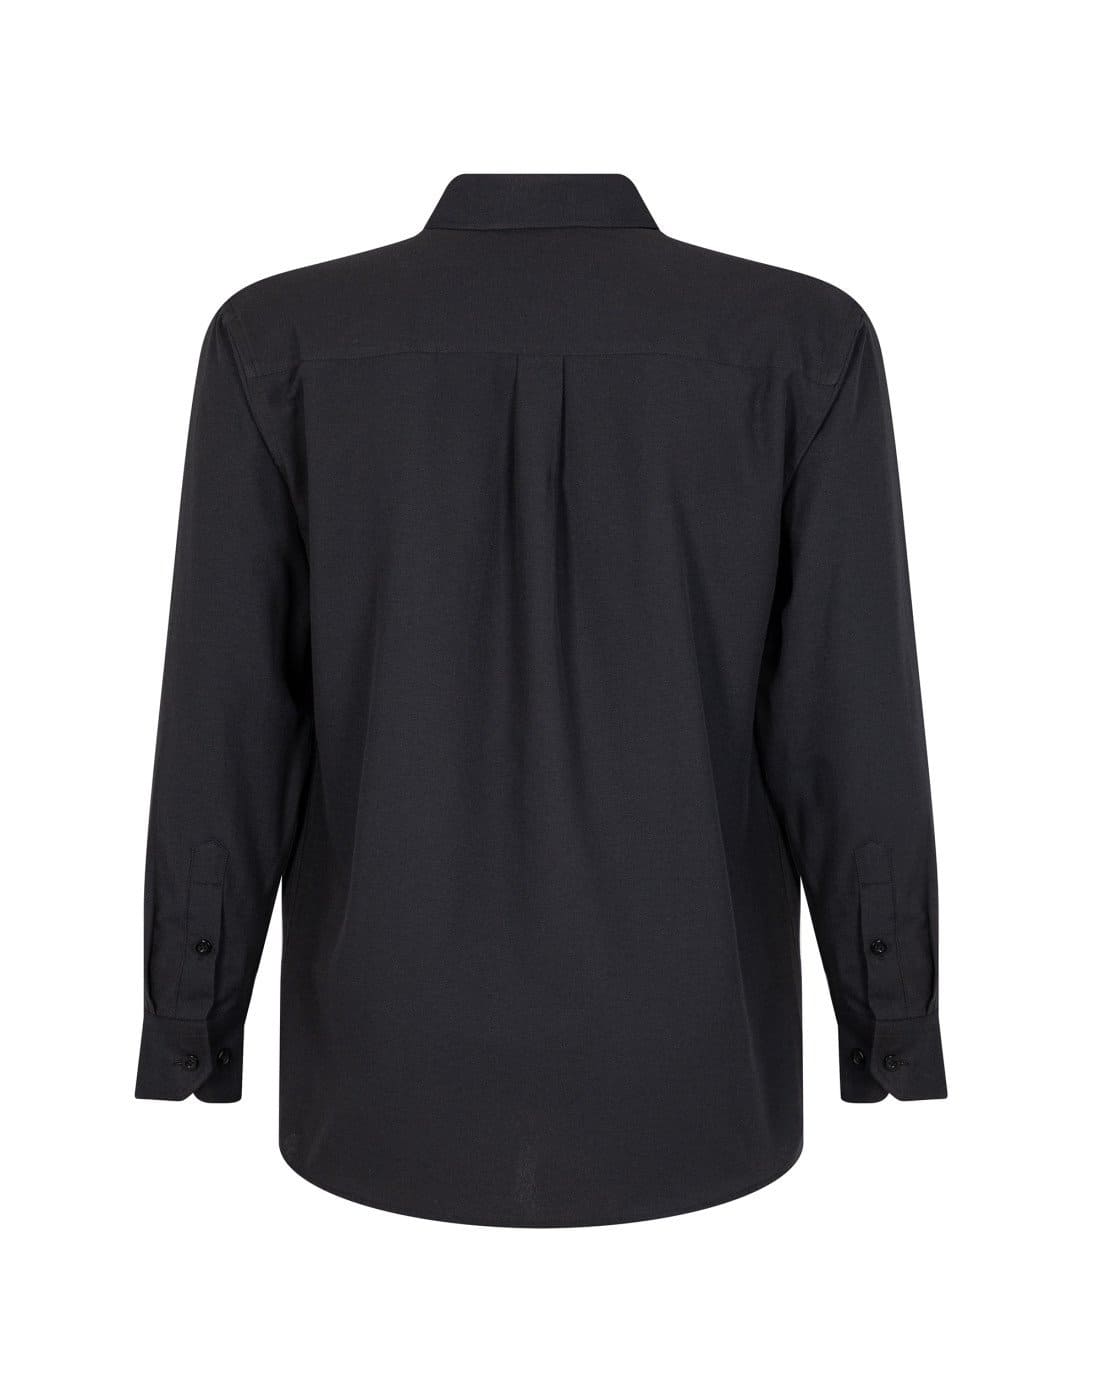 Camisa Oxford negra de TEAMGRAFF, estilo atemporal y versatilidad para el hombre moderno, perfecta para cualquier ocasión